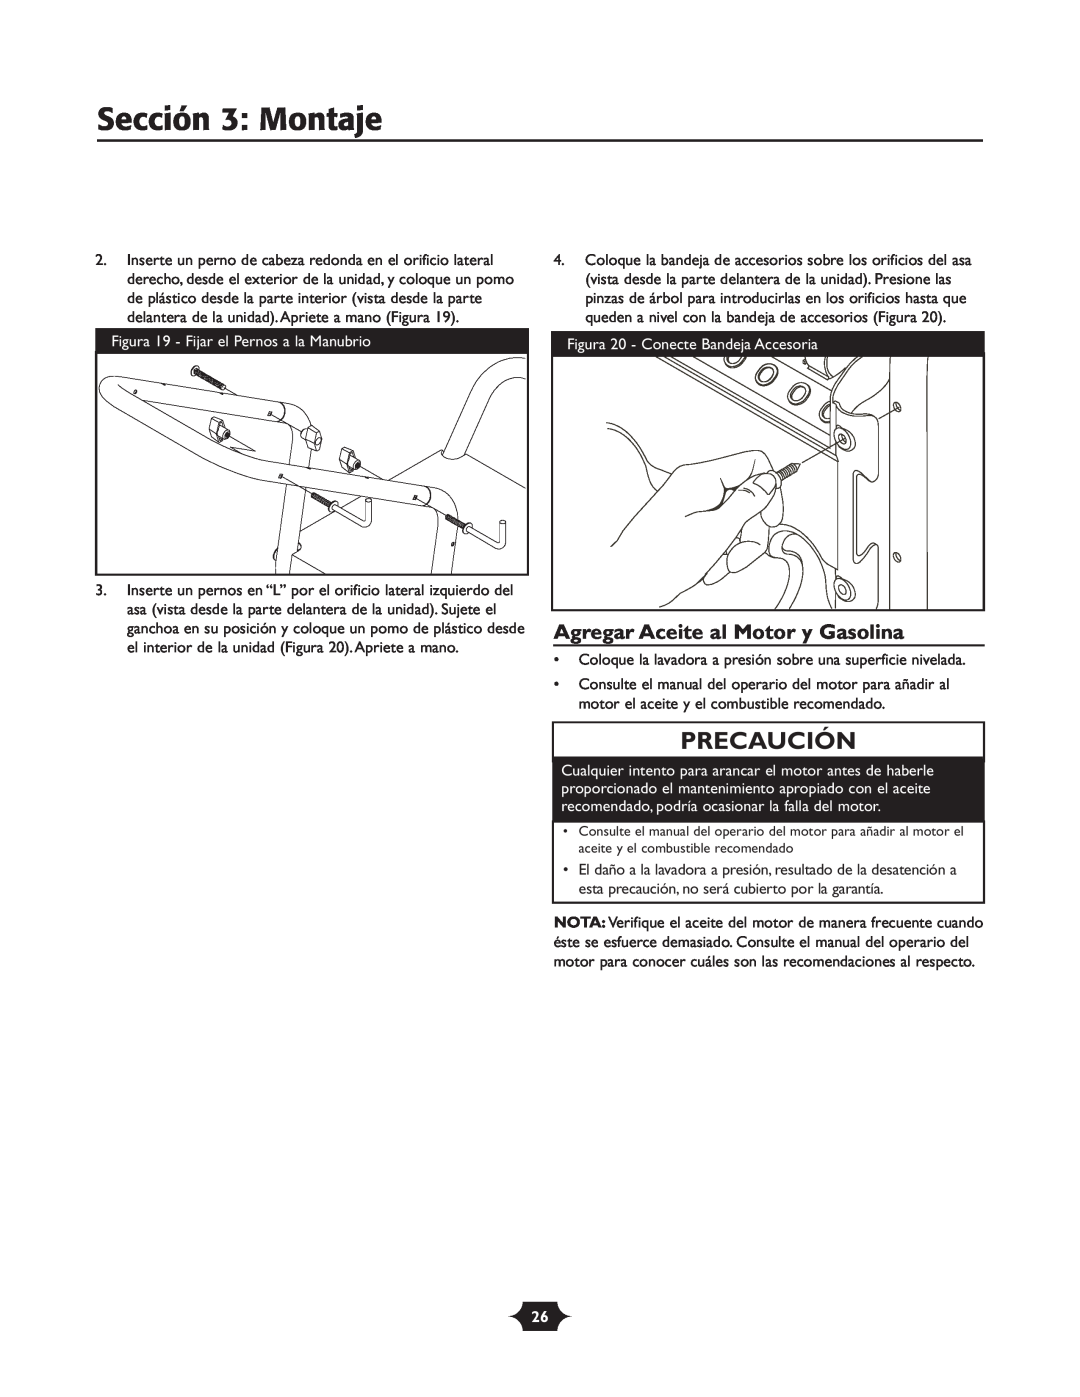 Troy-Bilt 020242-4 manual Sección 3 Montaje, Agregar Aceite al Motor y Gasolina, Precaución 